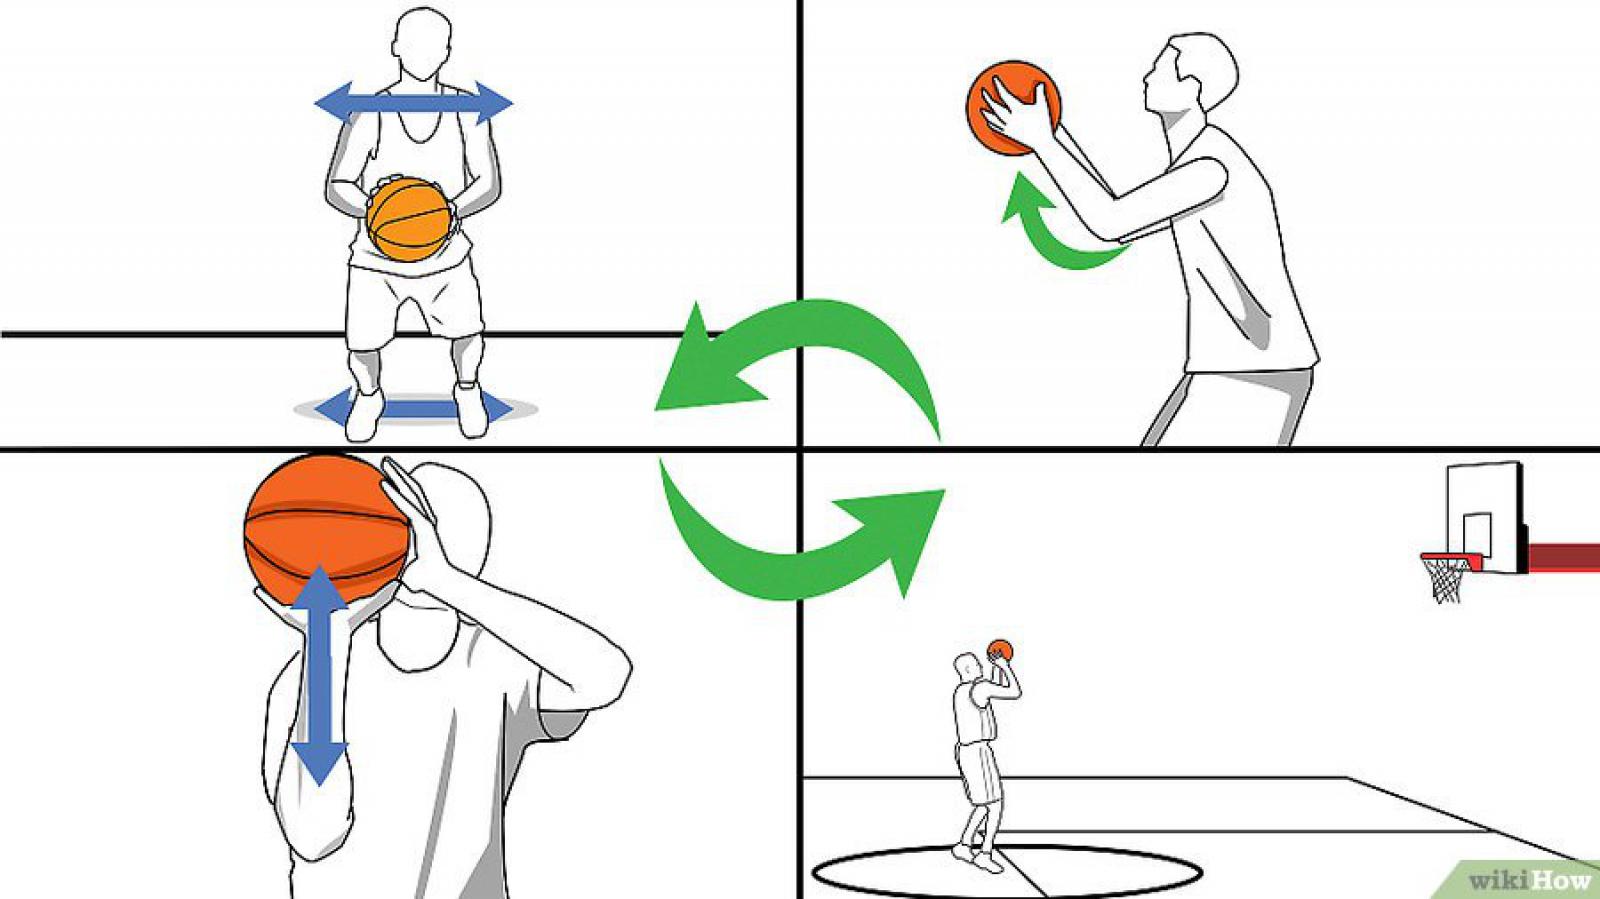 Баскетбол как кидать. Правильный бросок в баскетболе. Закибываиь мячи в баскетбольное кольцо. Бросок мяча в кольцо в баскетболе. Правильный бросок мяча в баскетболе.